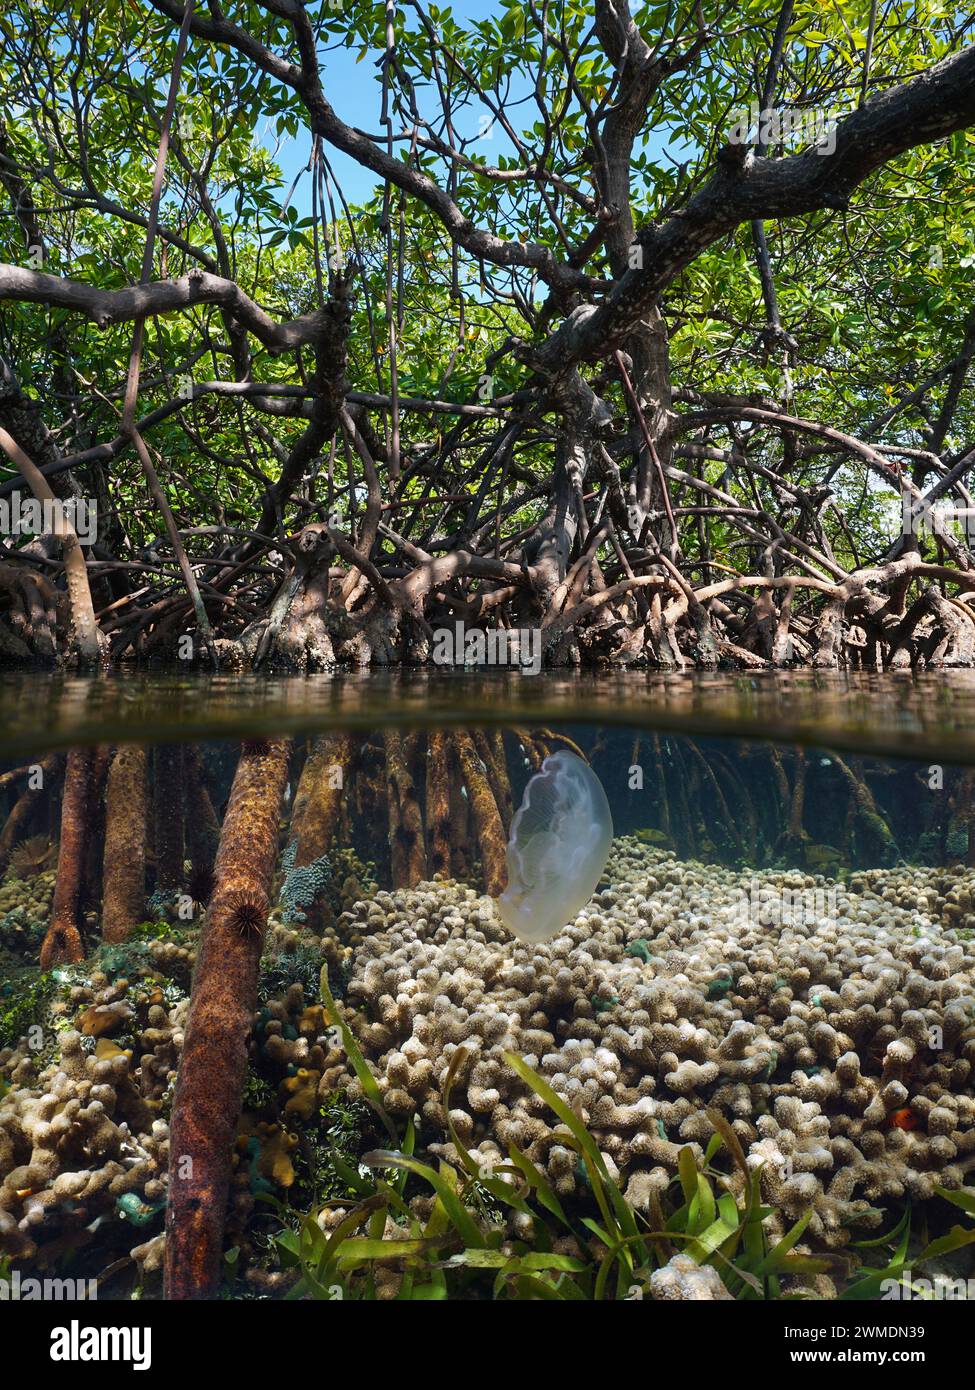 Mangrovenbaum in der Karibik mit Fingerkorallen und einer Mondqualle unter Wasser, geteilter Blick über und unter der Wasseroberfläche, natürliche Szene, Panama Stockfoto